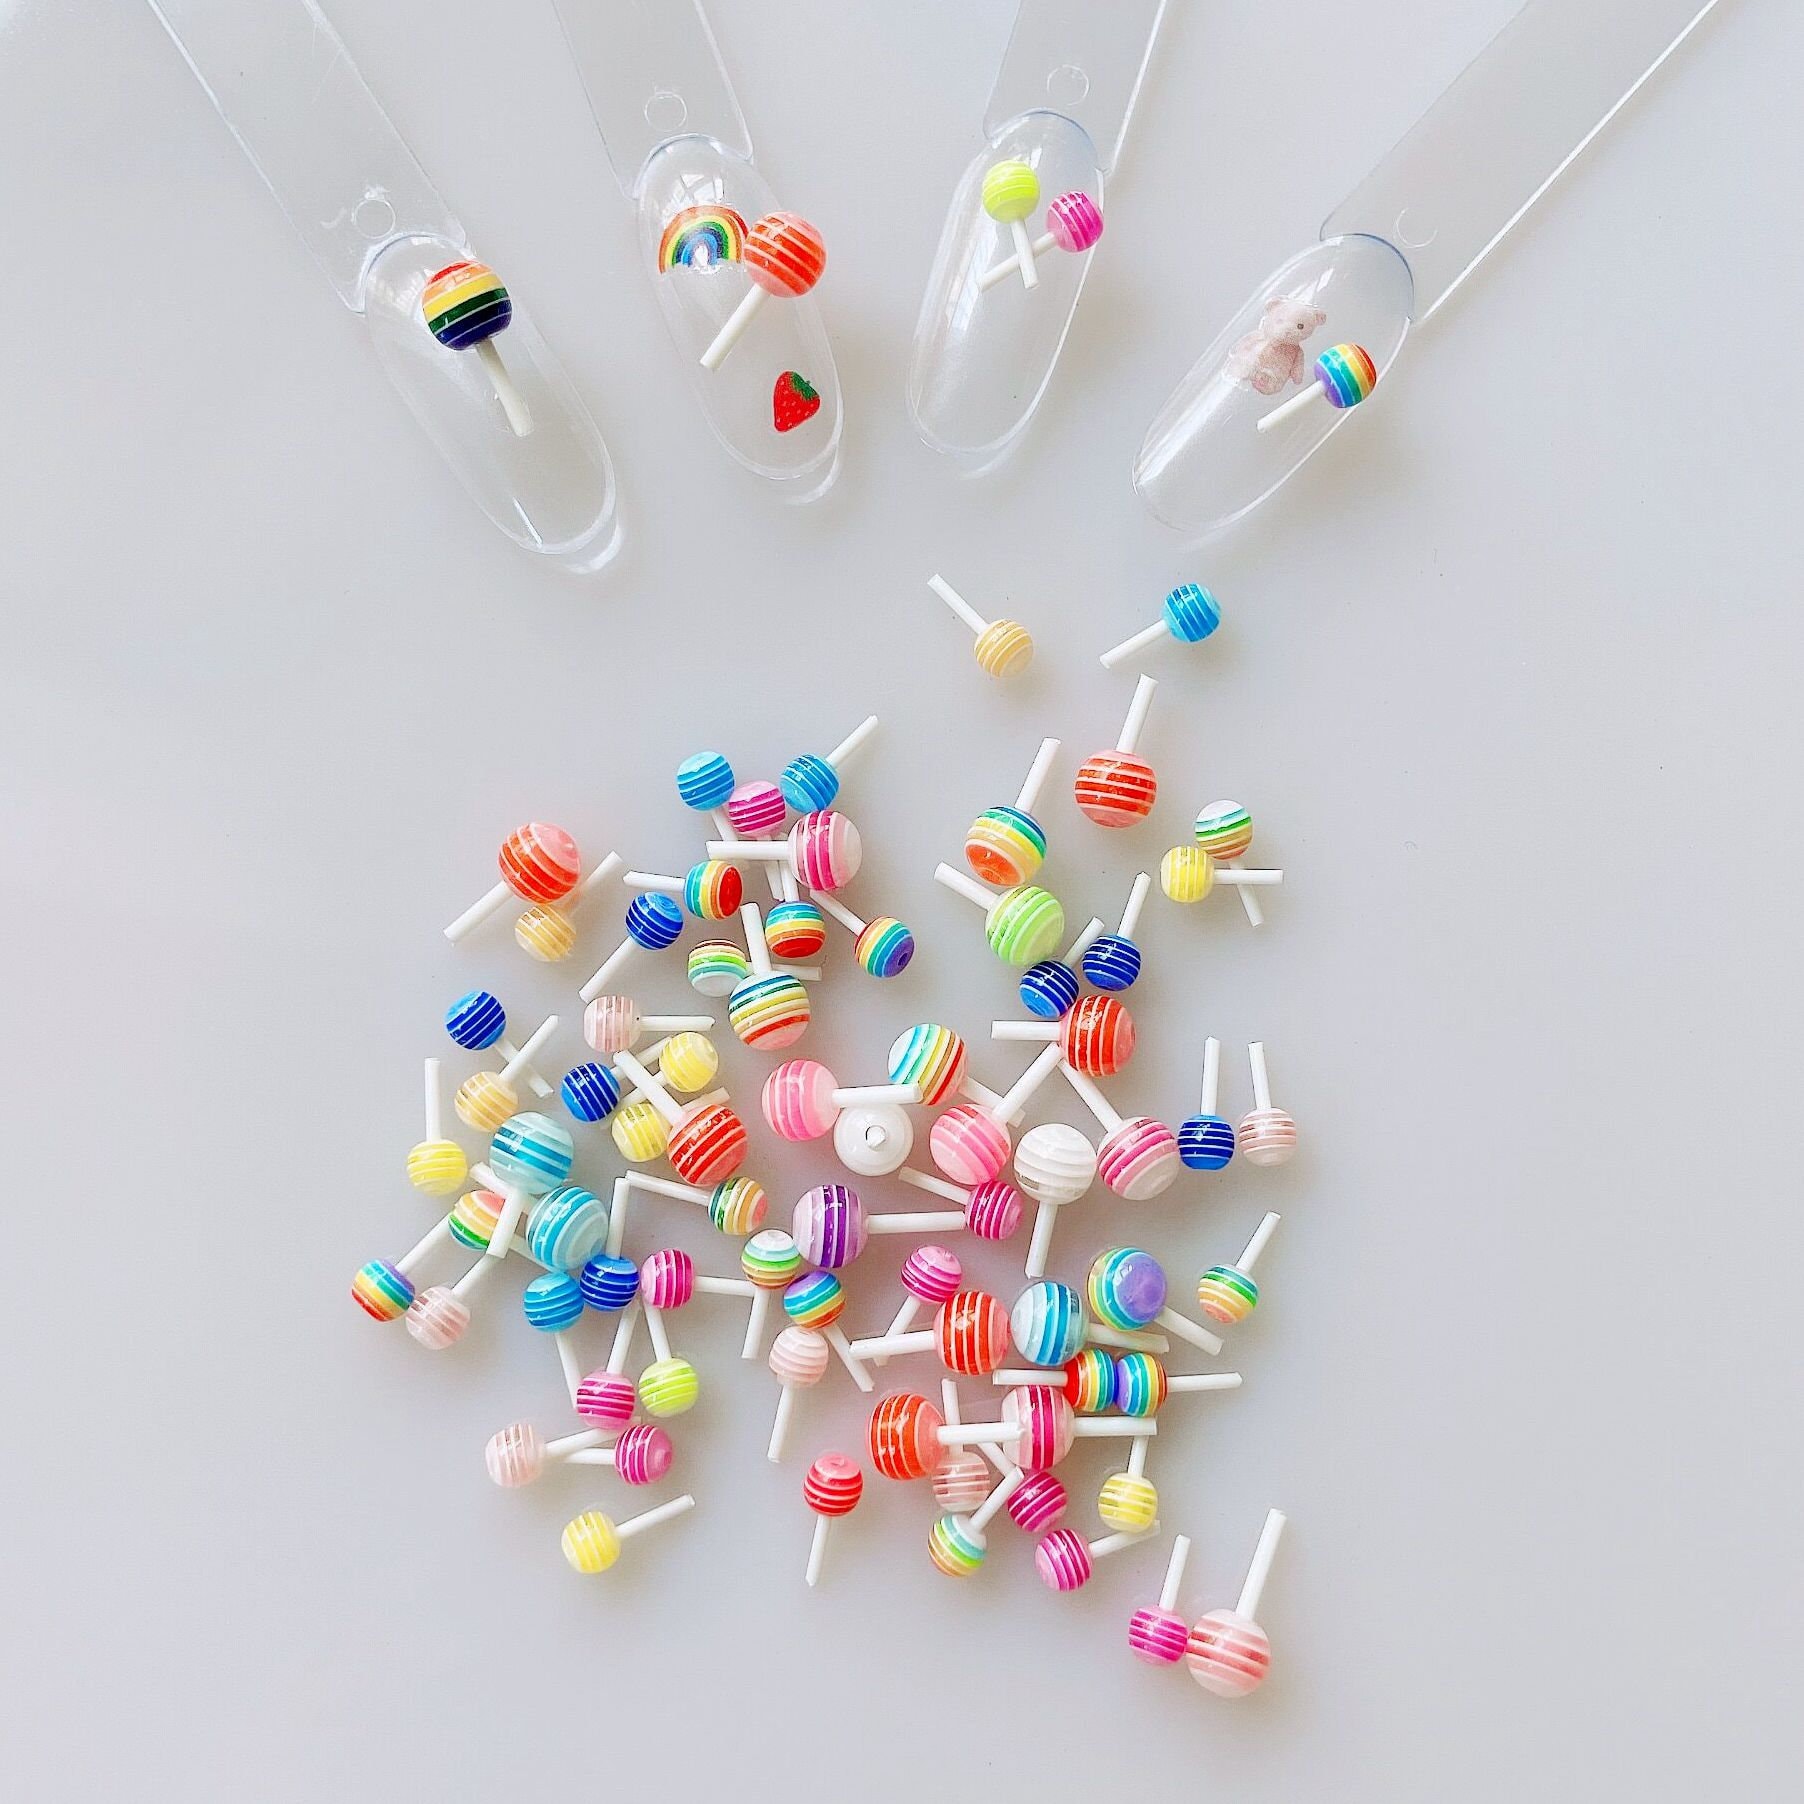 30 Stück/Tasche Cartoon Nail Art Lollypop Candy Deco Resin Zufällig Gemischt Farben Deko Dekoration Nagel Diy 4mm/6mm Rc244 von Etsy - NailAngel2019